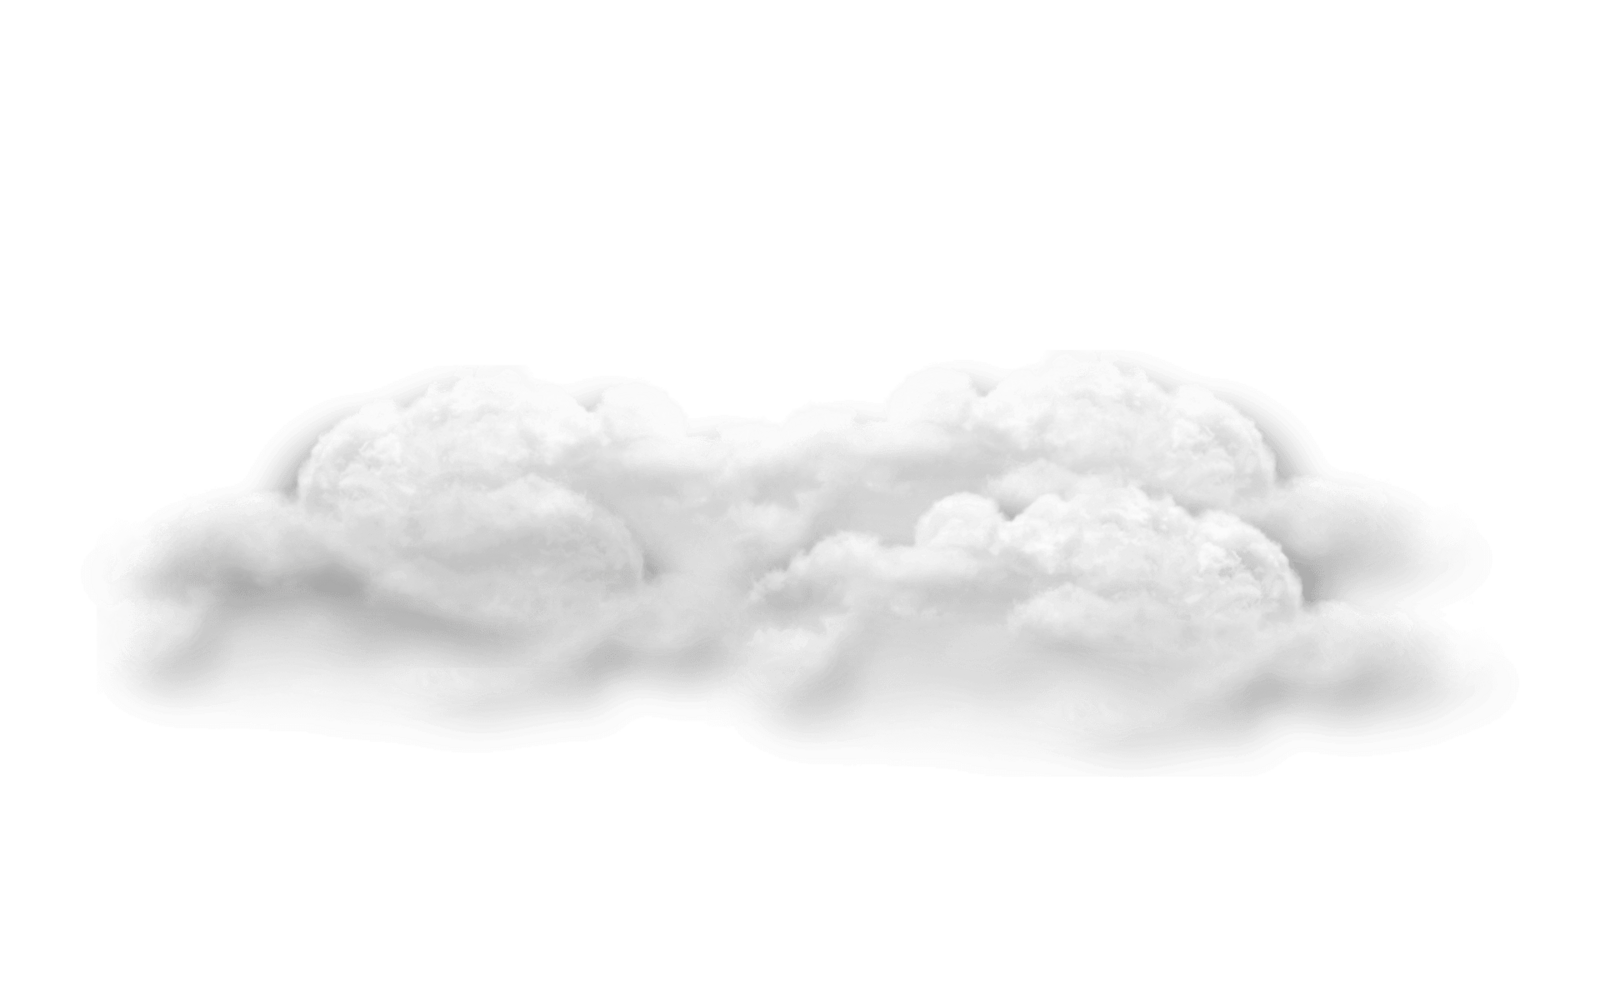 A dense, billowy white cloud against a dark backdrop.